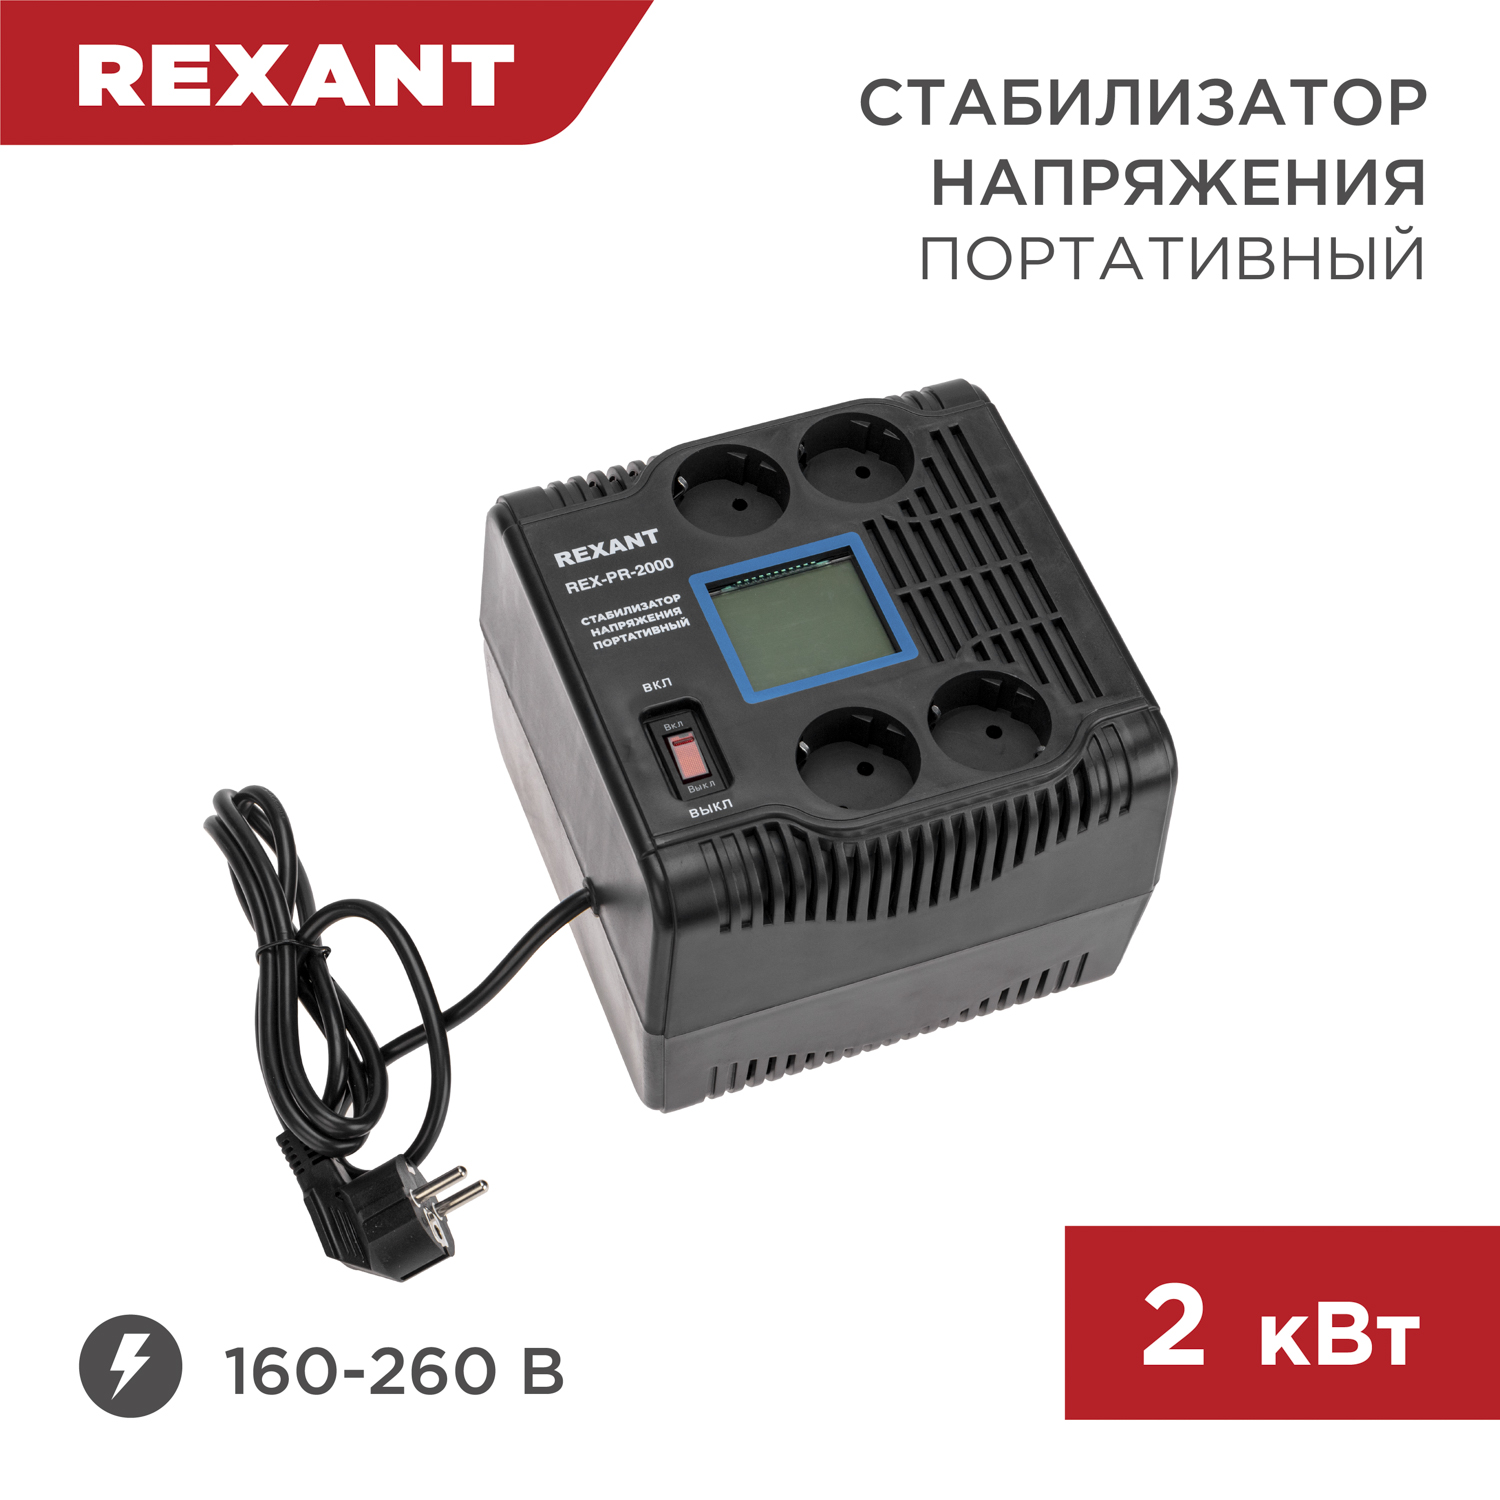 Стабилизатор напряжения портативный REXANT REX-PR-2000 11-5032 портативный детектор напряжения uni t